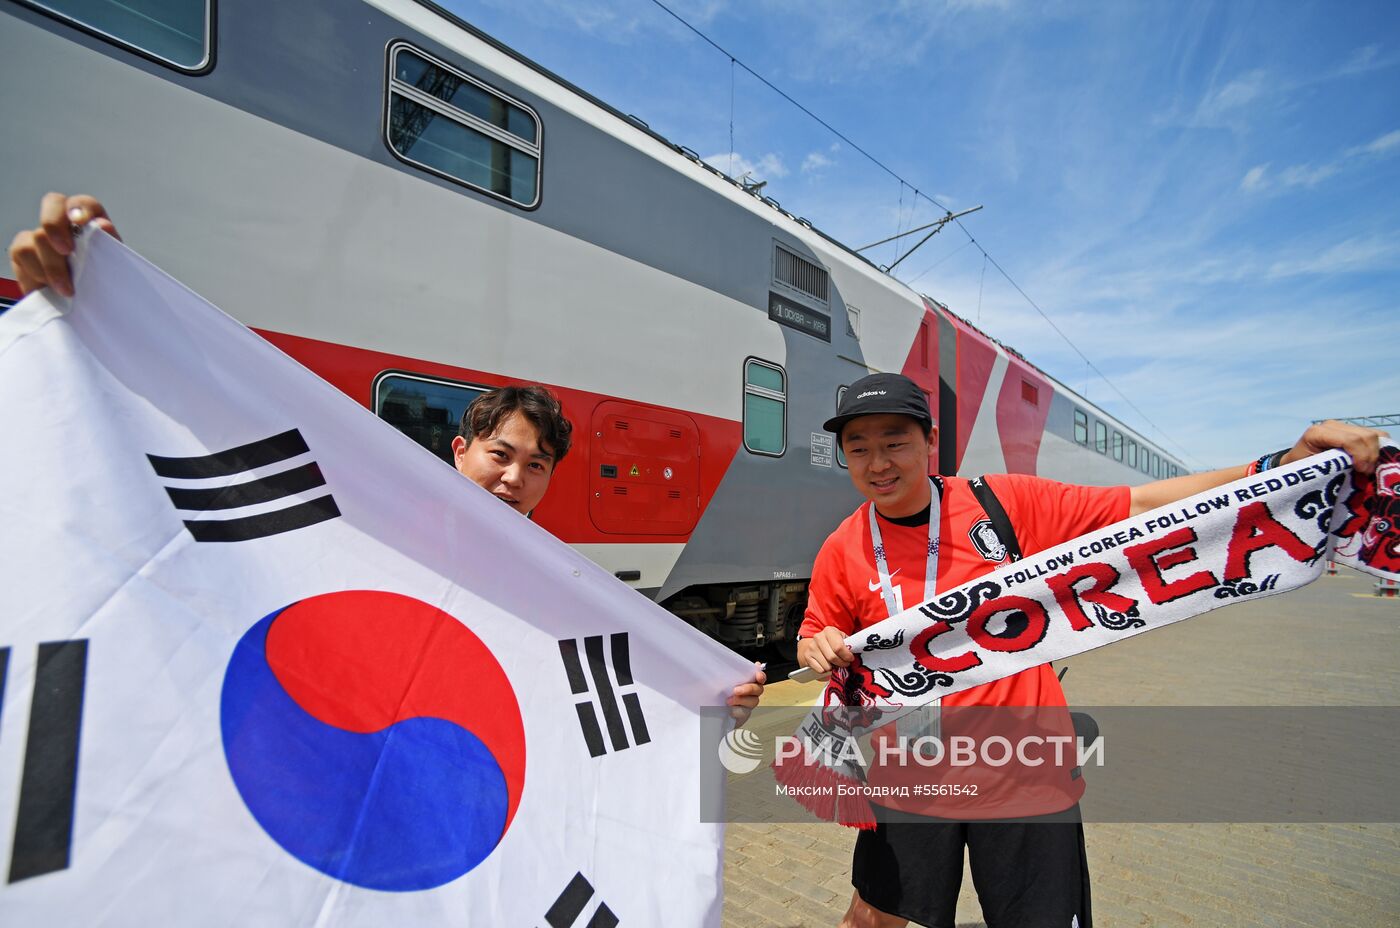 Приезд болельщиков сборной Республики Корея в Казань